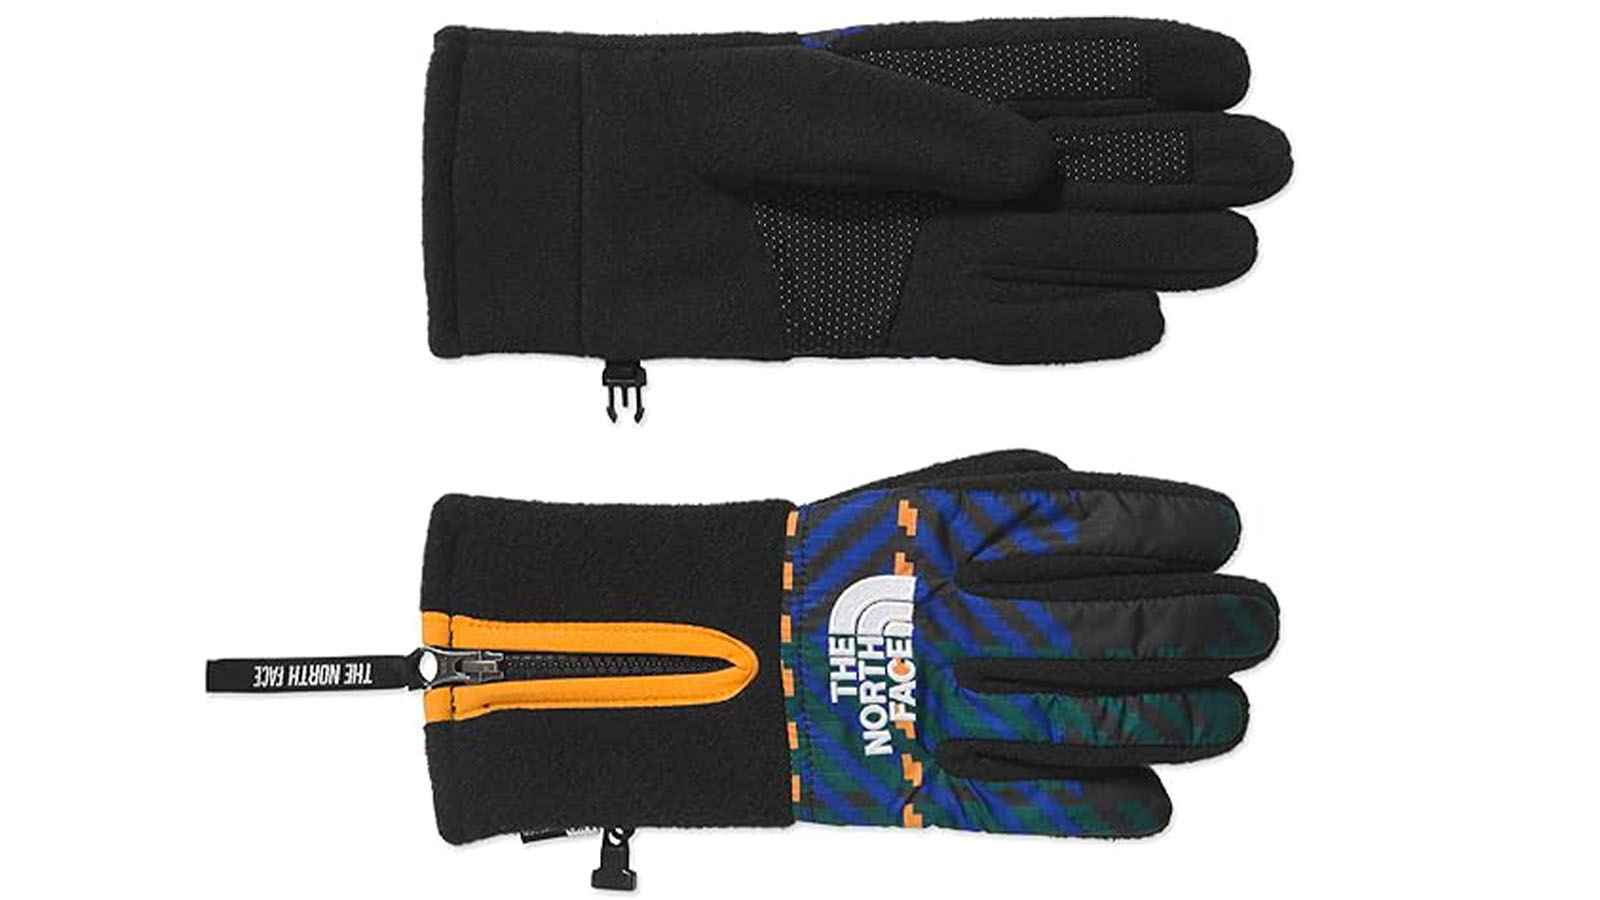 North Face Denali Etip Gloves - Best for hiking